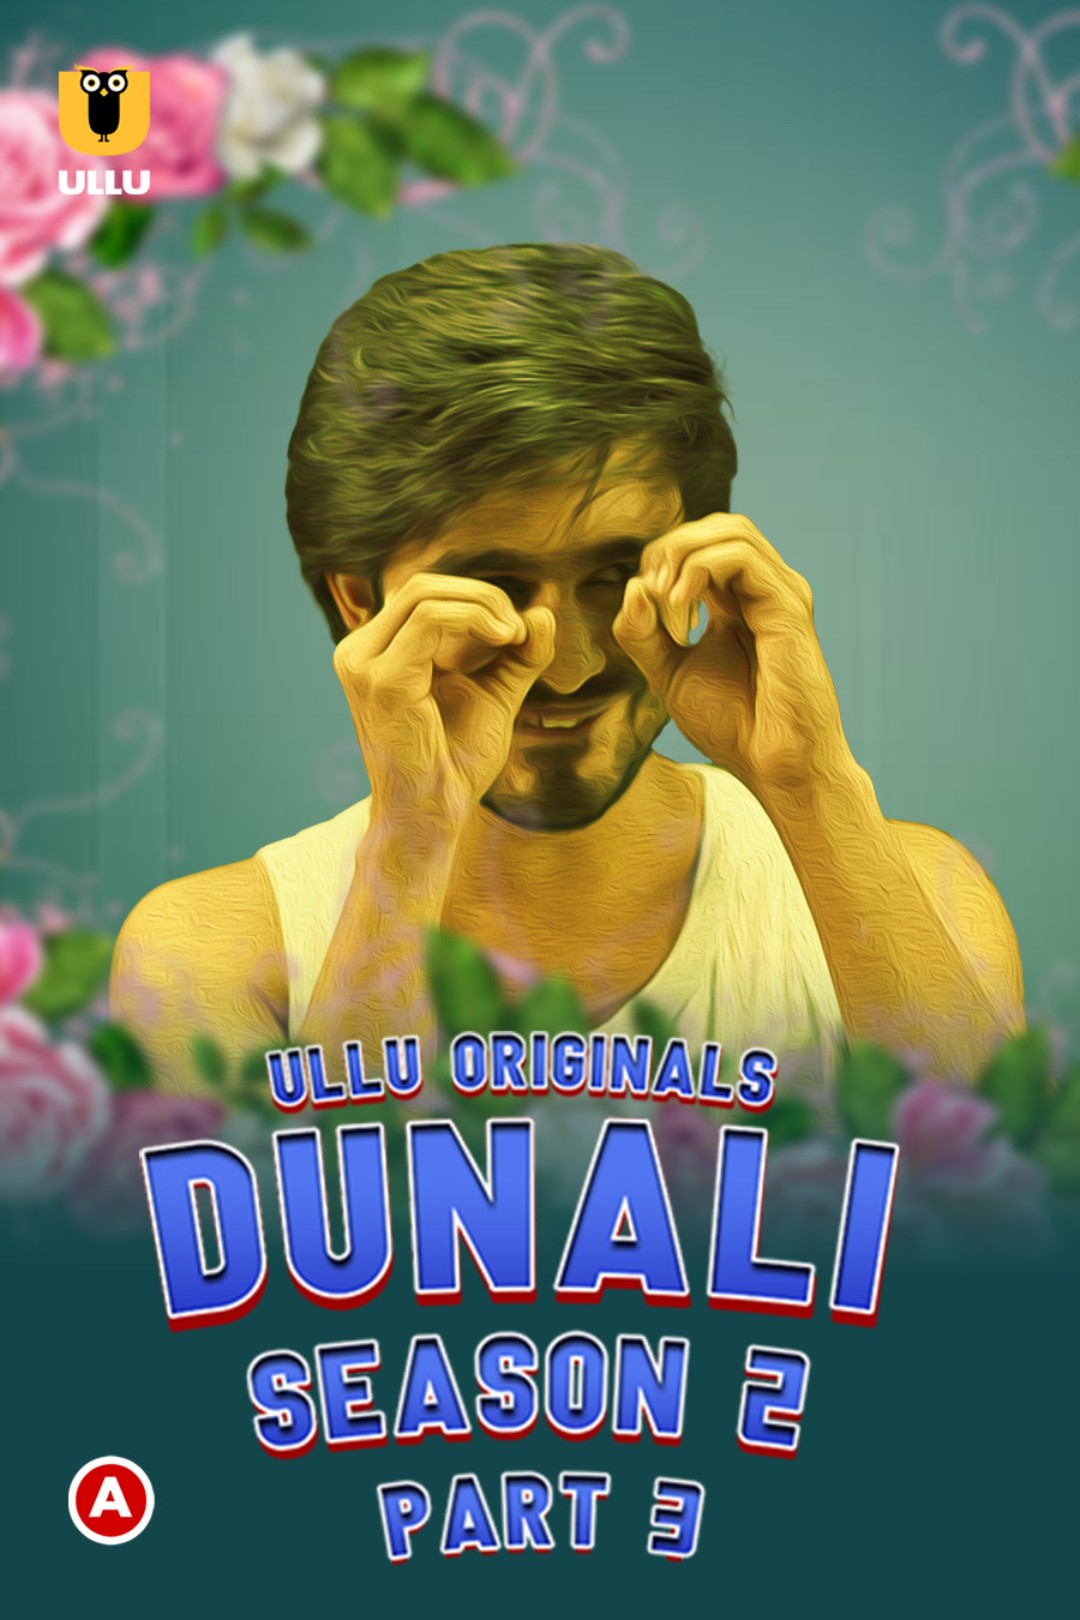 Download [18+] Dunali (2022) S02 Part 3 ULLU Originals WEB Series